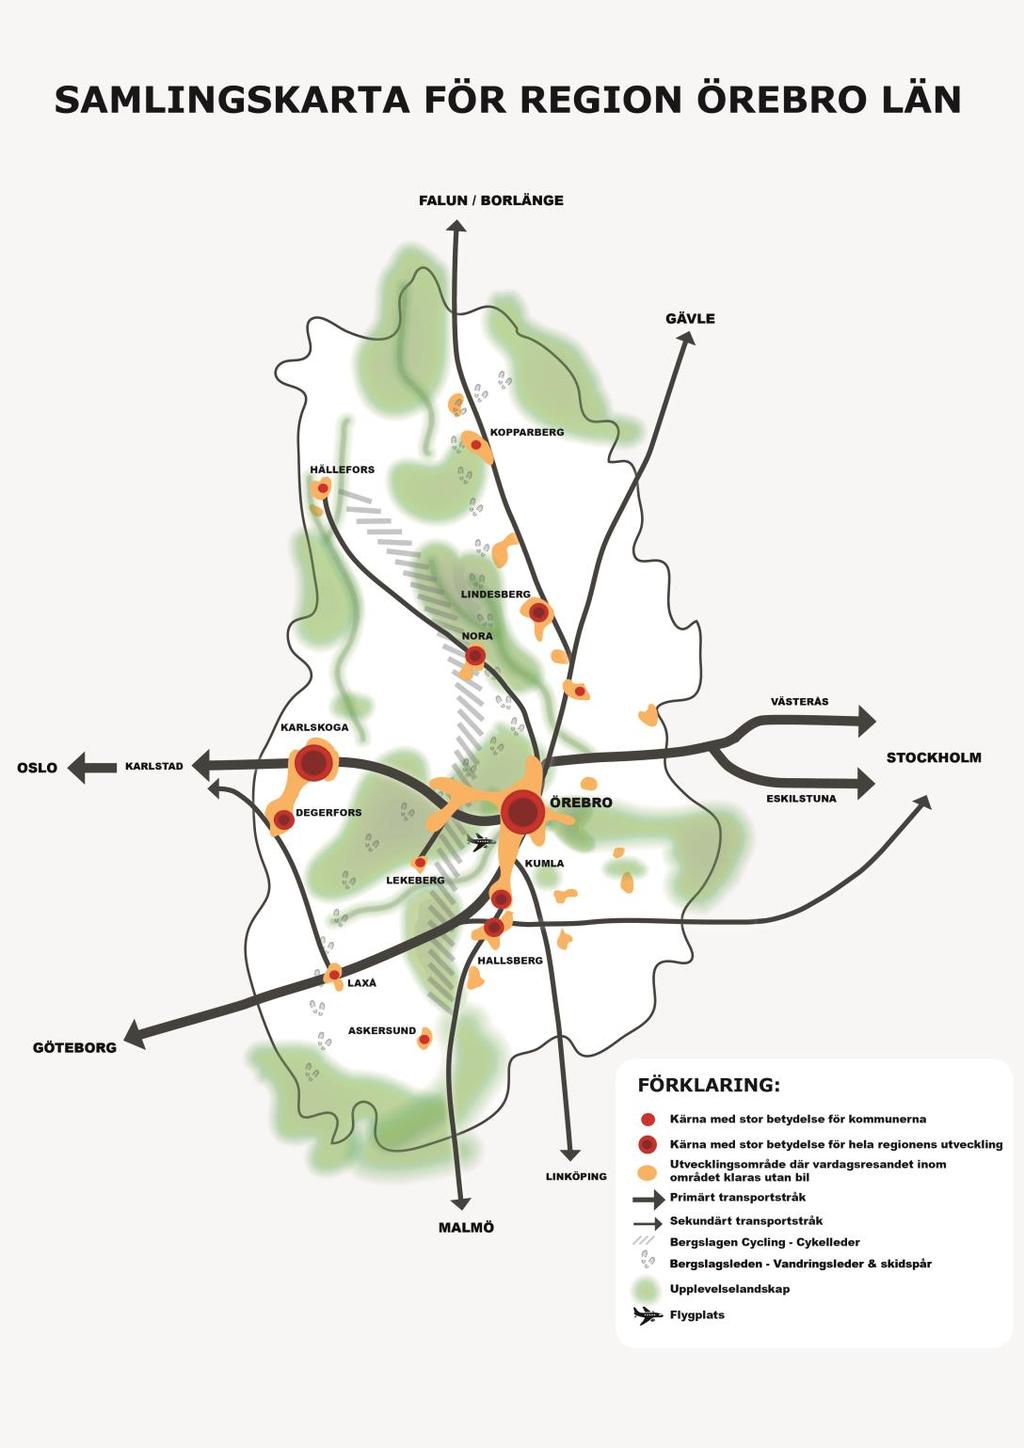 Figur 7. Samlingskarta över strukturbilderna i Region Örebro län, målbild bortom 2030.